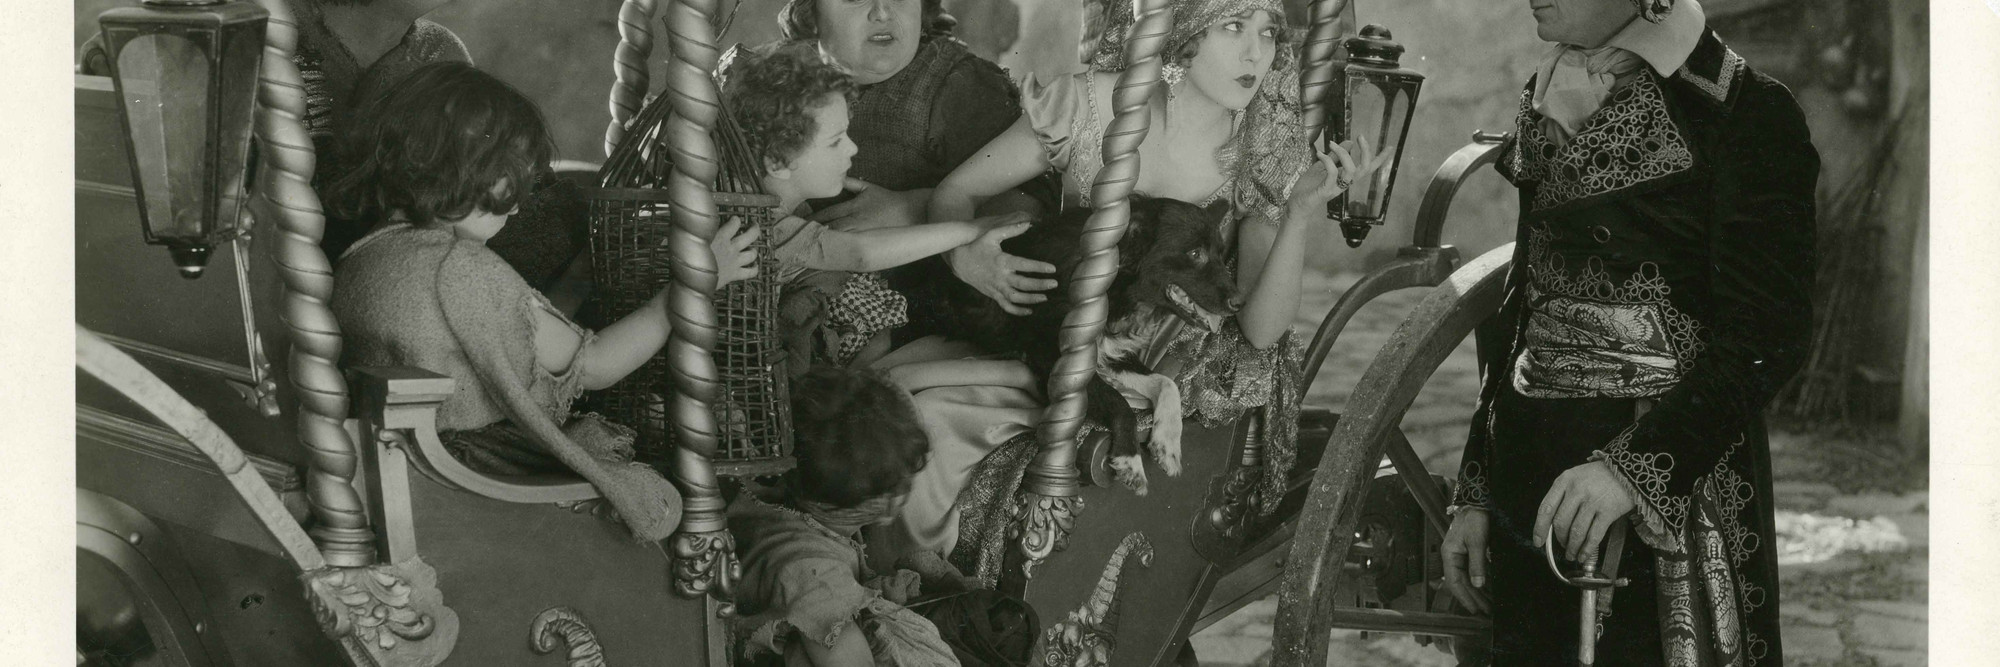 Rosita. 1923. USA. Directed by Ernst Lubitsch